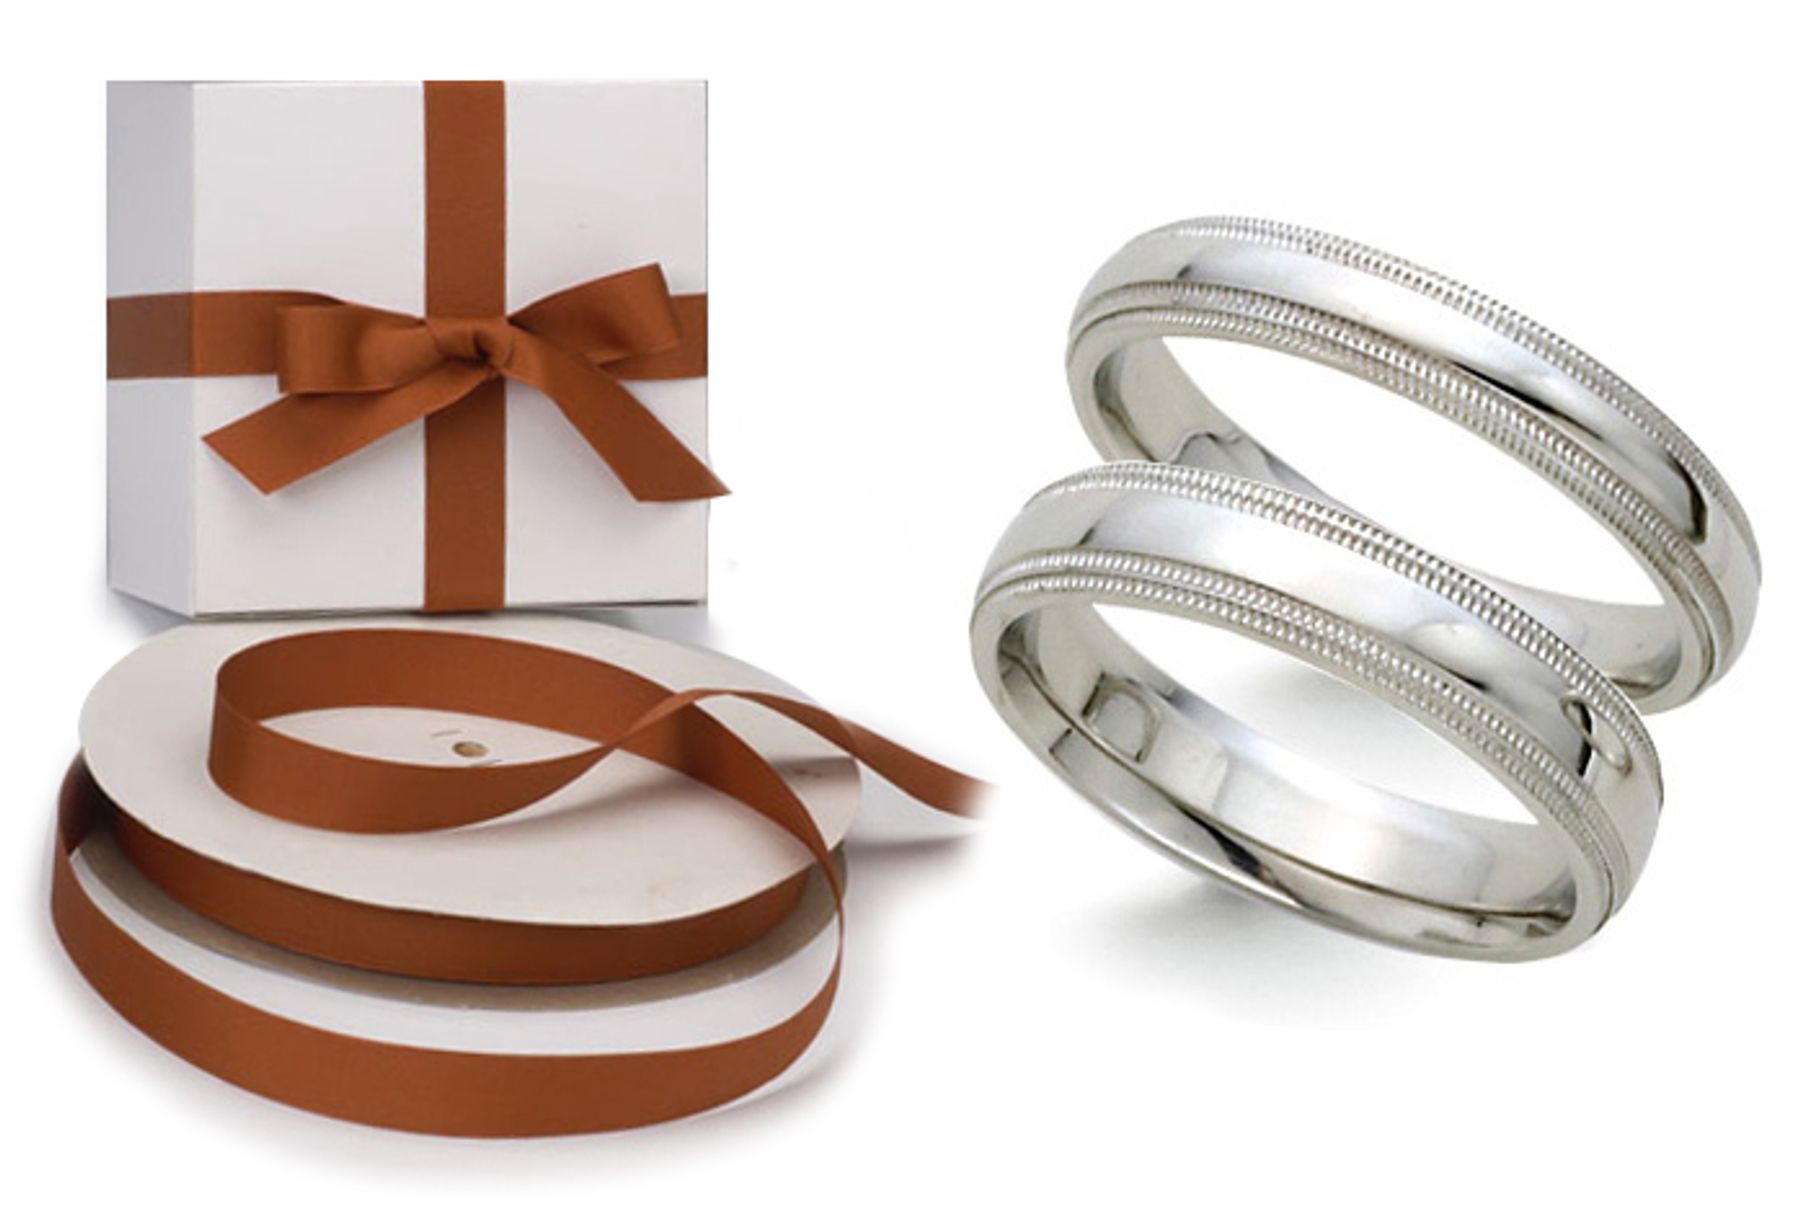 Platinum Wedding Comfort Fit Double Milgrain Rings: Platinum Iridium comfort fit double milgrain ring